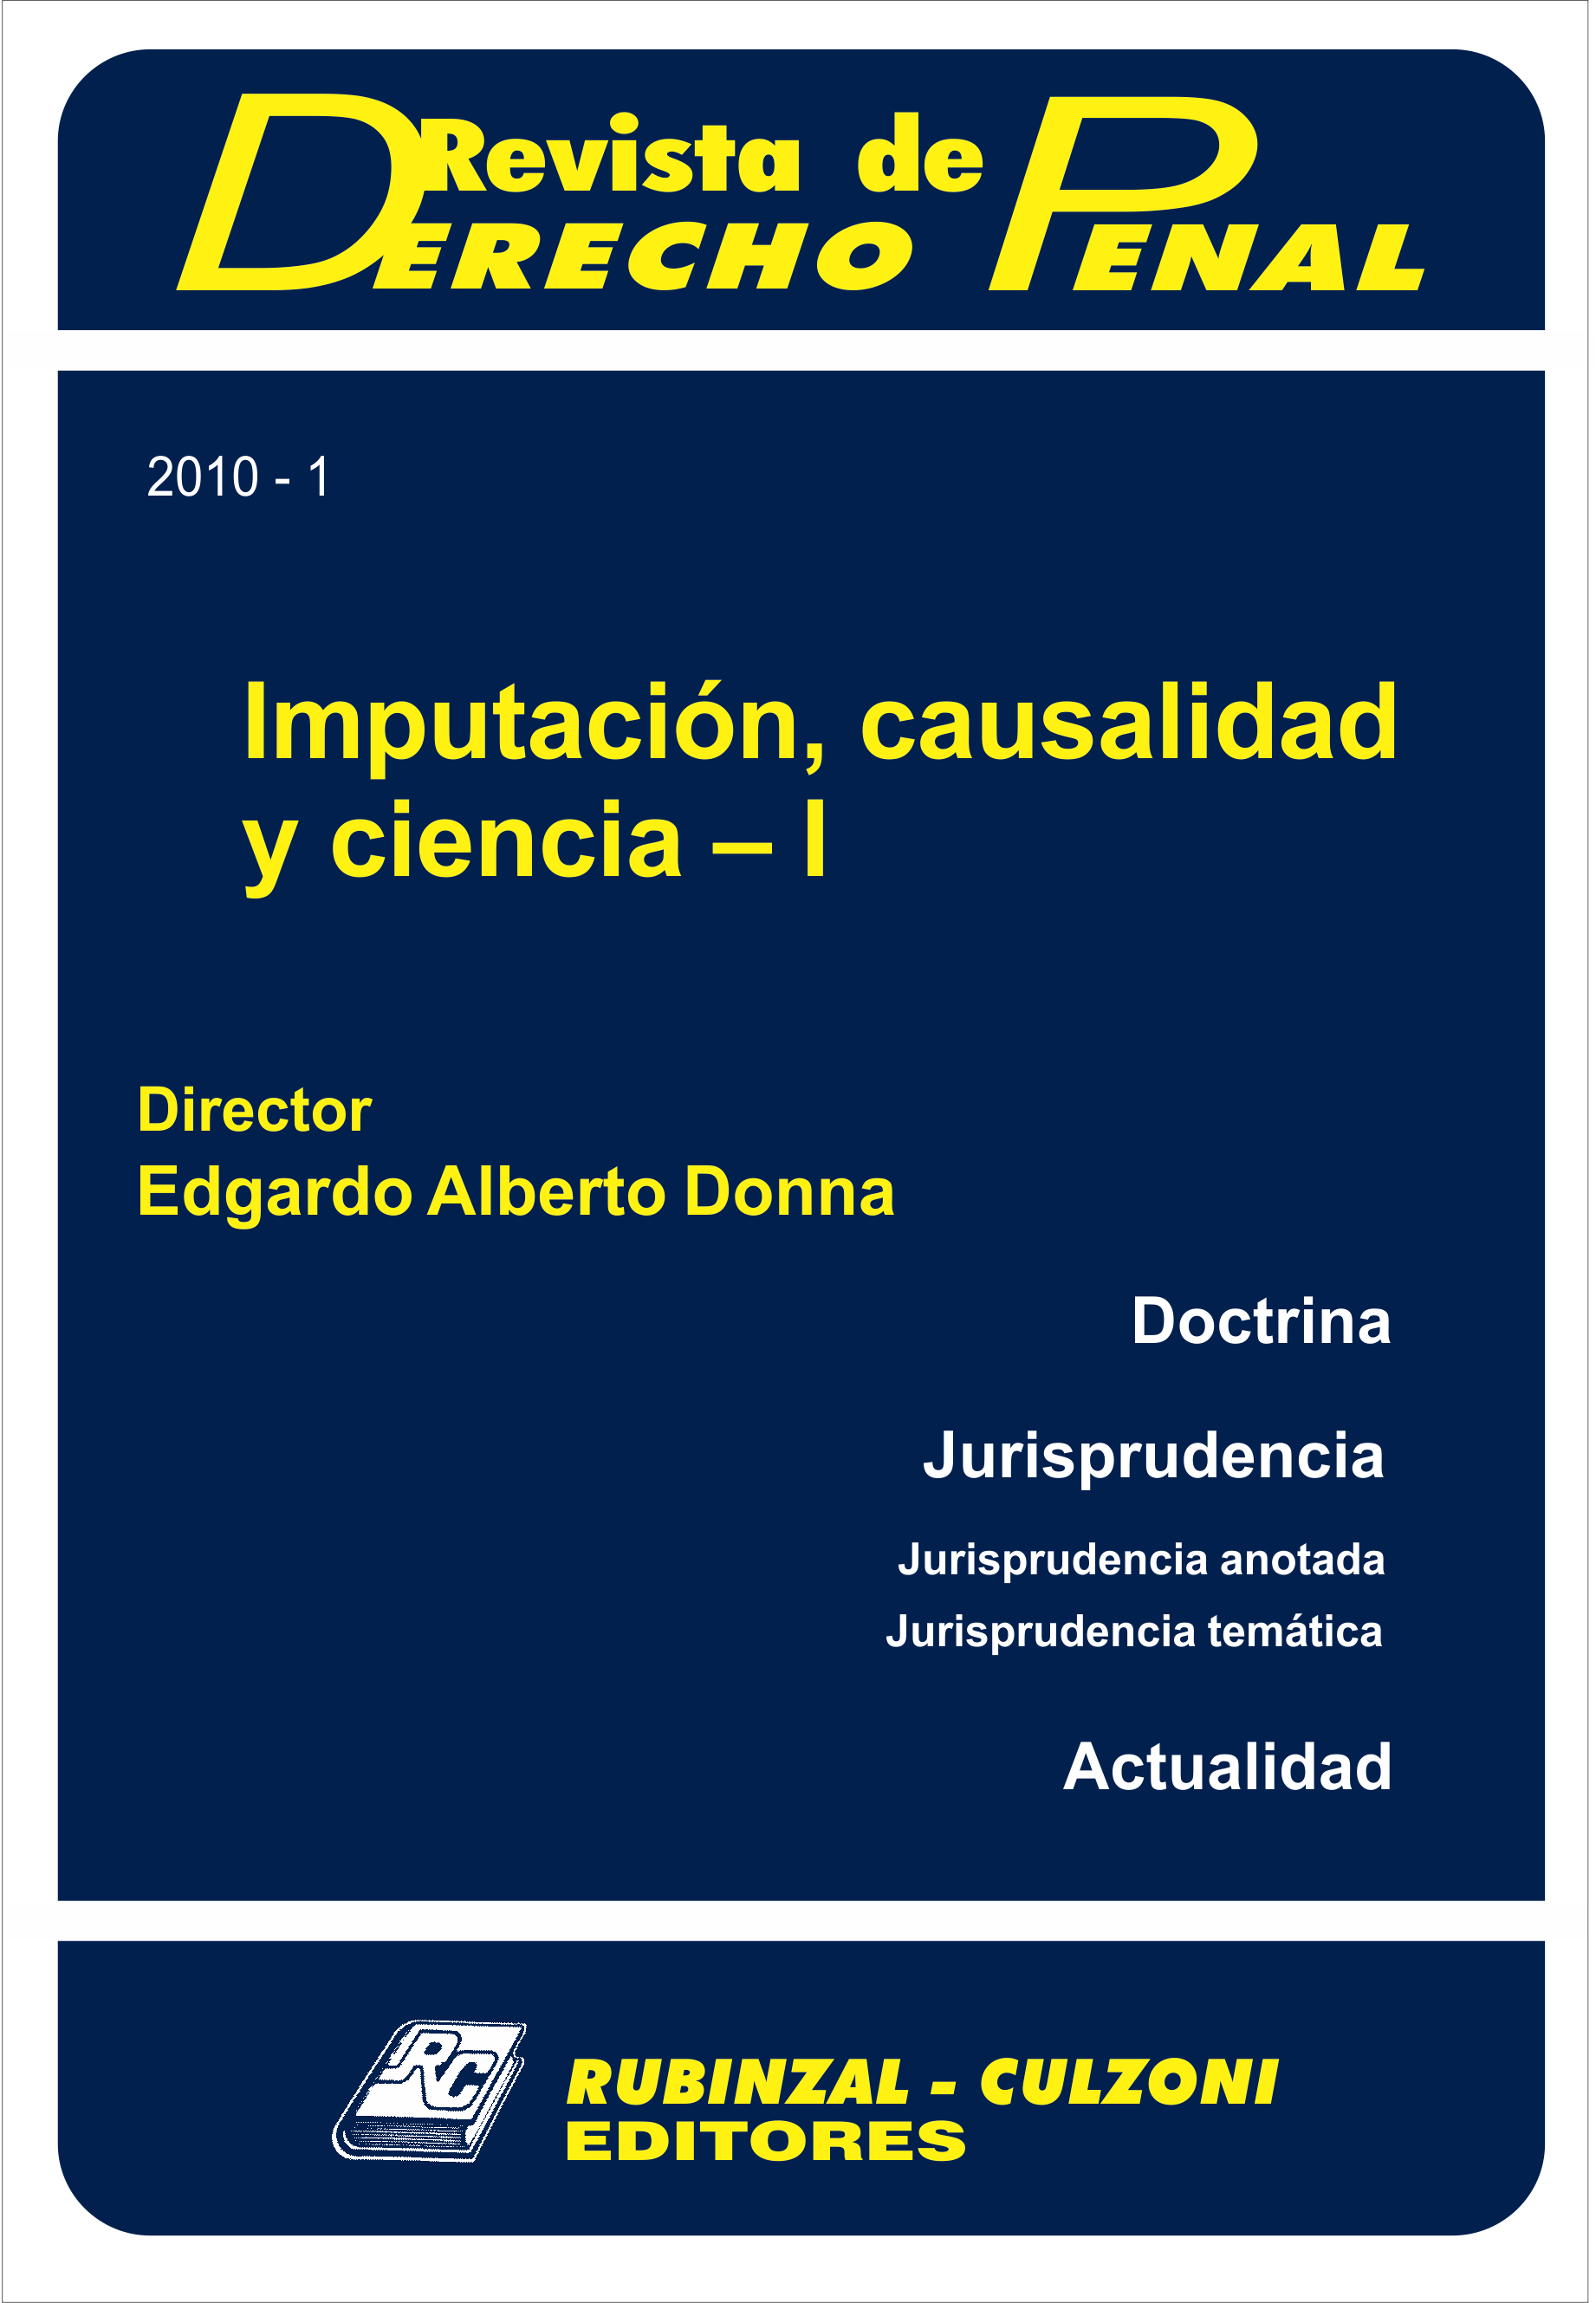 Revista de Derecho Penal - Imputación, causalidad y ciencia - I. [2010-1]